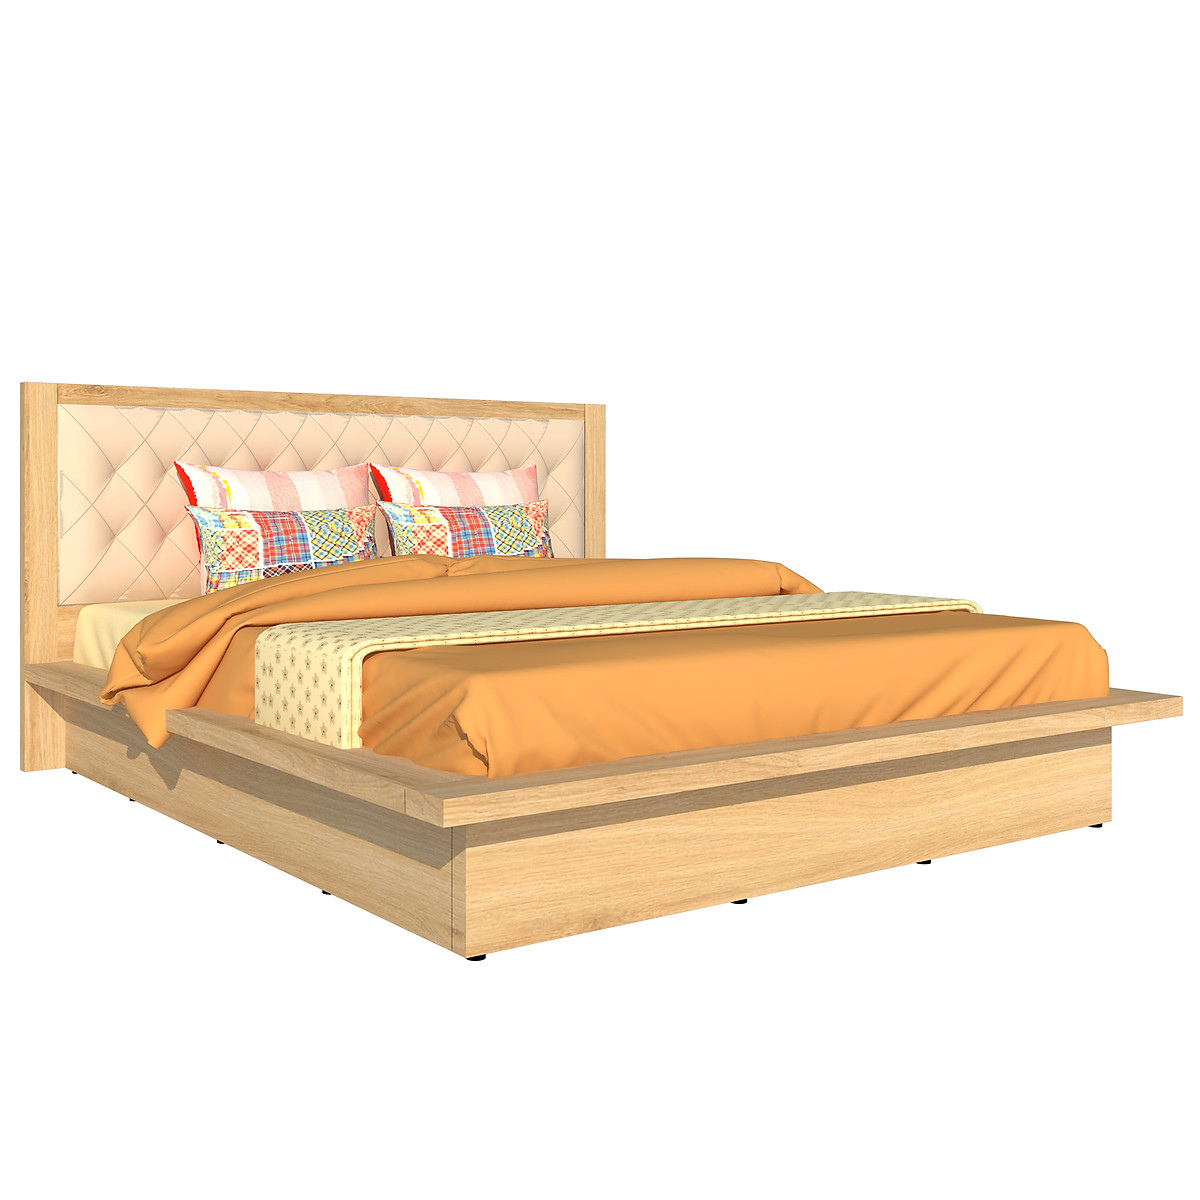 Giường ngủ cao cấp Tundo màu vàng sồi 140cm x 200cm